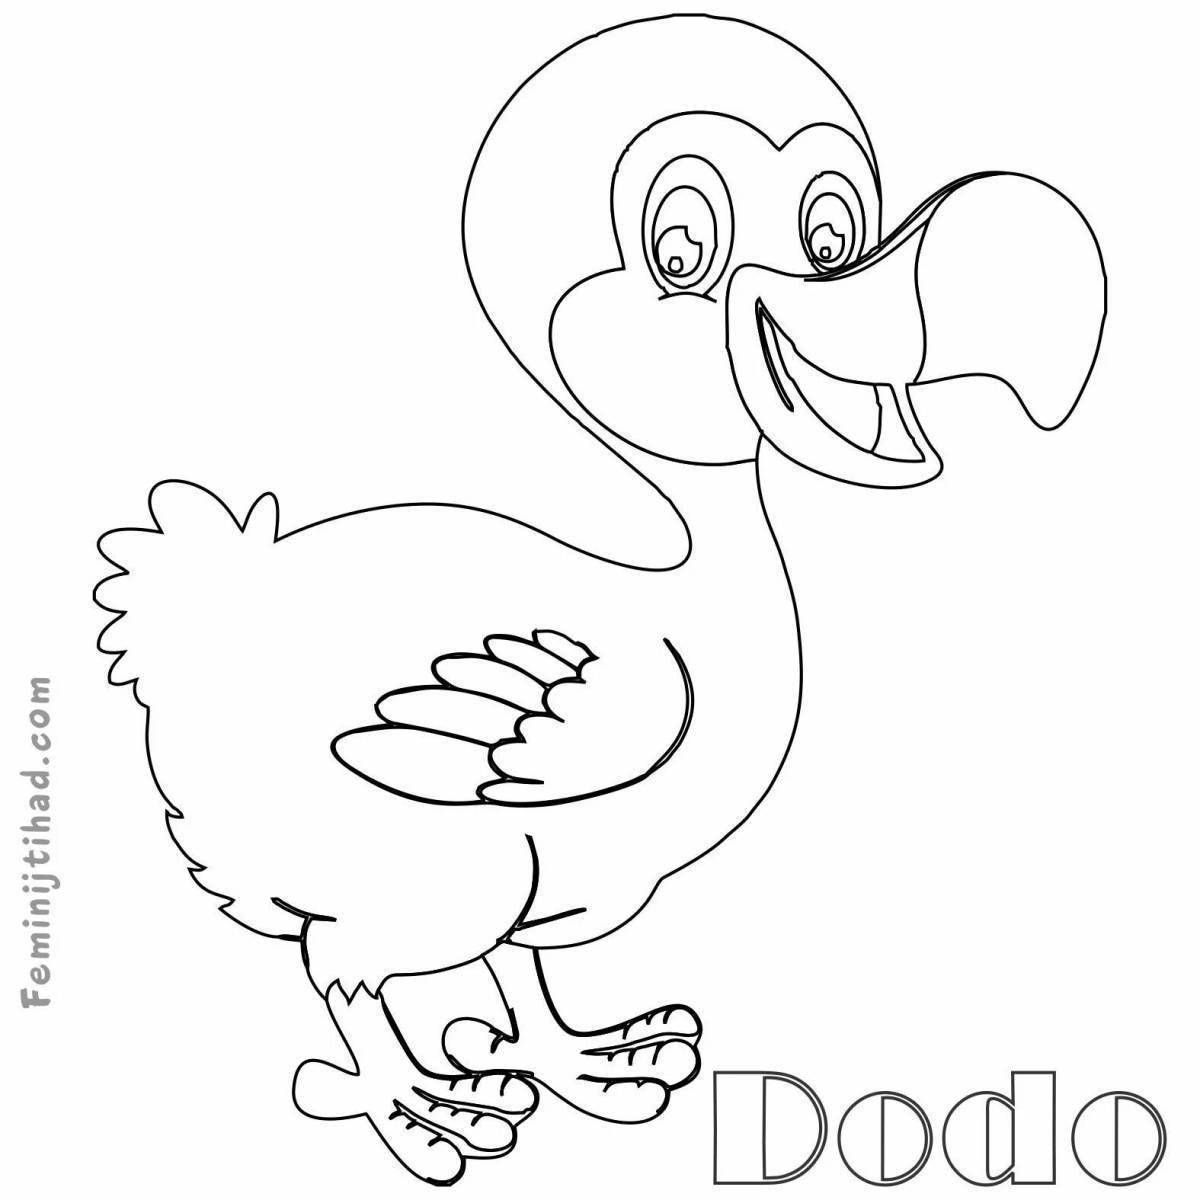 Spicy dodo coloring